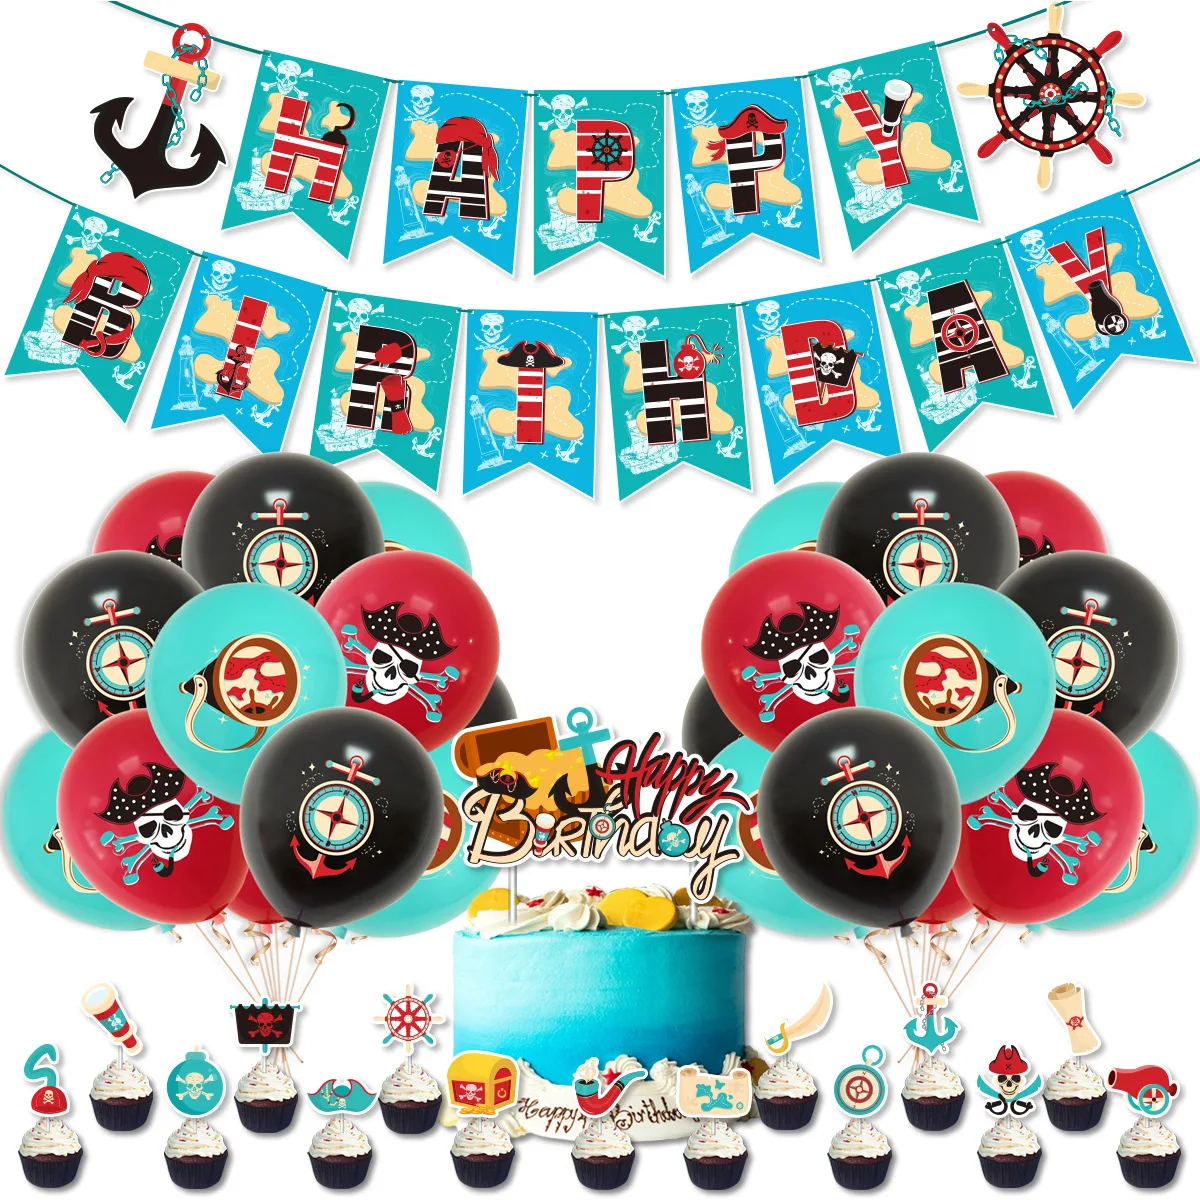 

Тема пирата Фотофон пиратские сокровища с днем рождения воздушные шары баннер торт Топпер для детей день рождения Вечеринка фотодекор